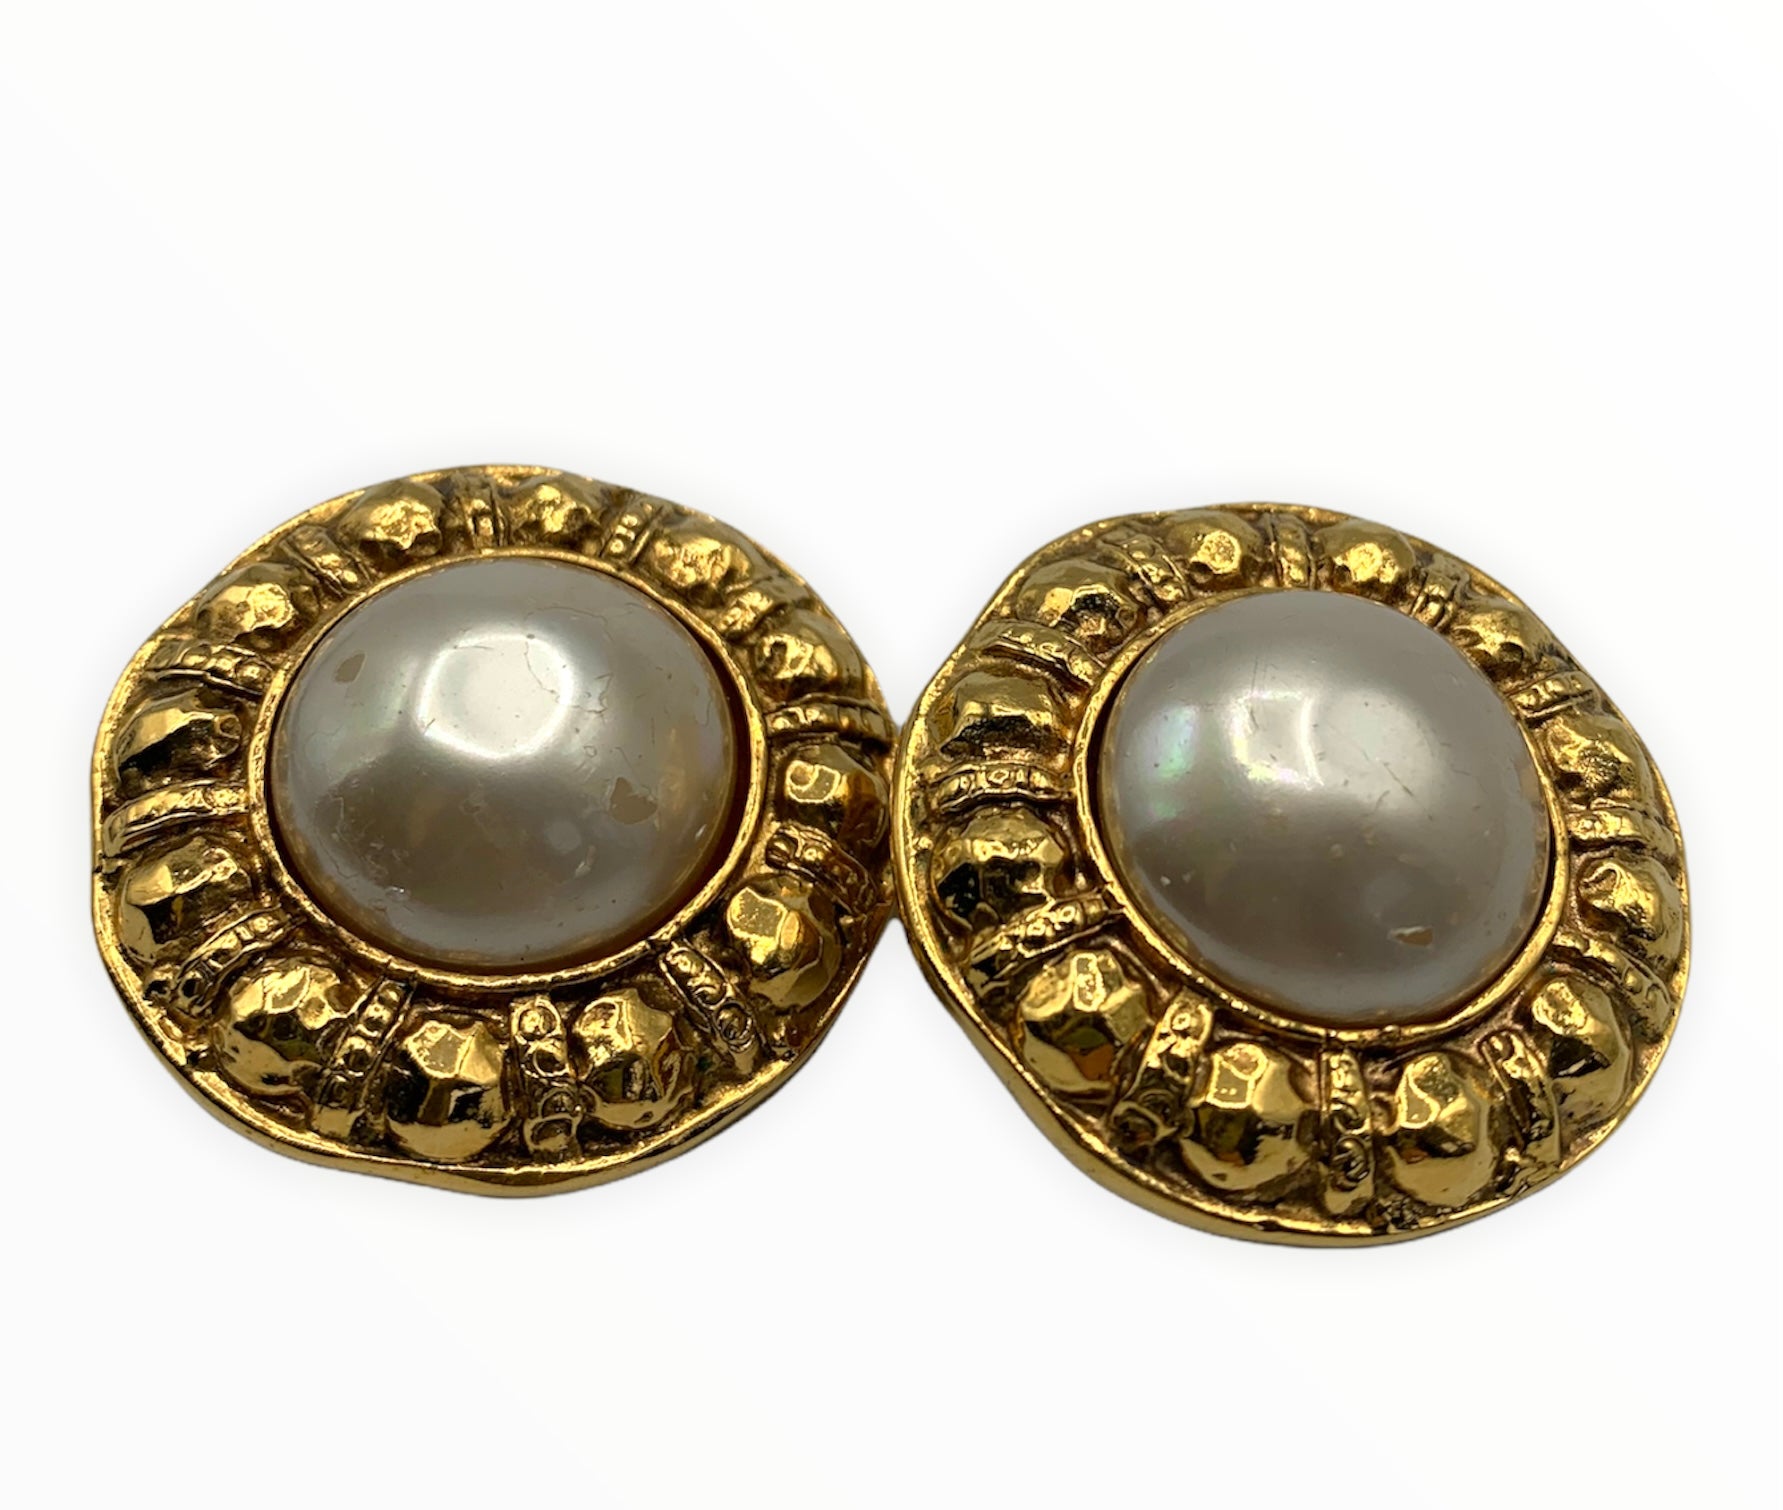 Chanel vintage faux pearl clip on earrings – My Girlfriend's Wardrobe LLC